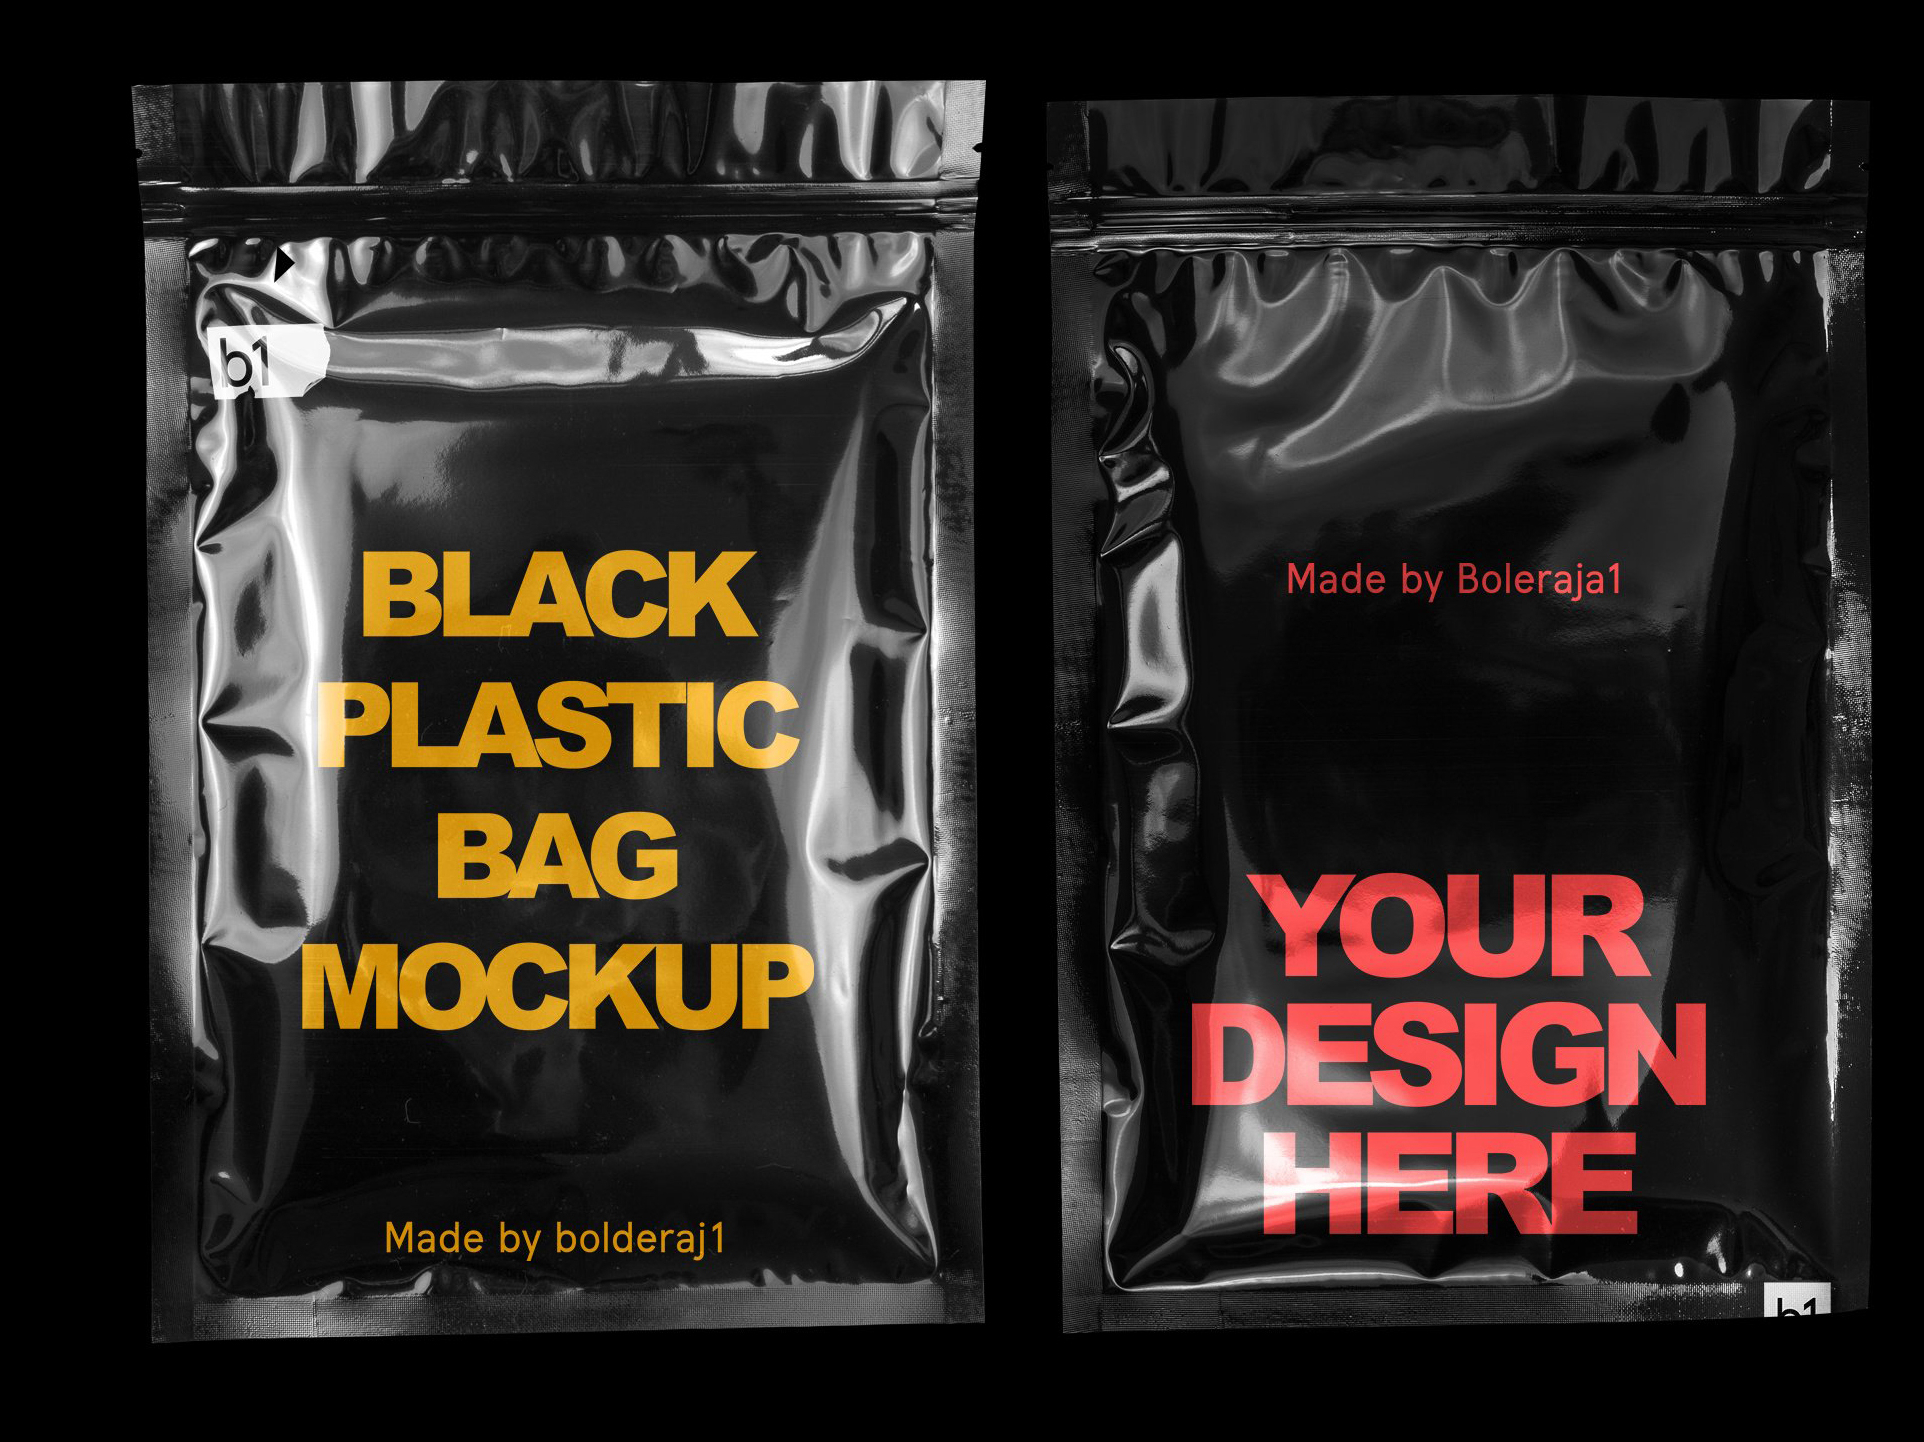 Download Black plastic bag mockup by Mockup5 on Dribbble